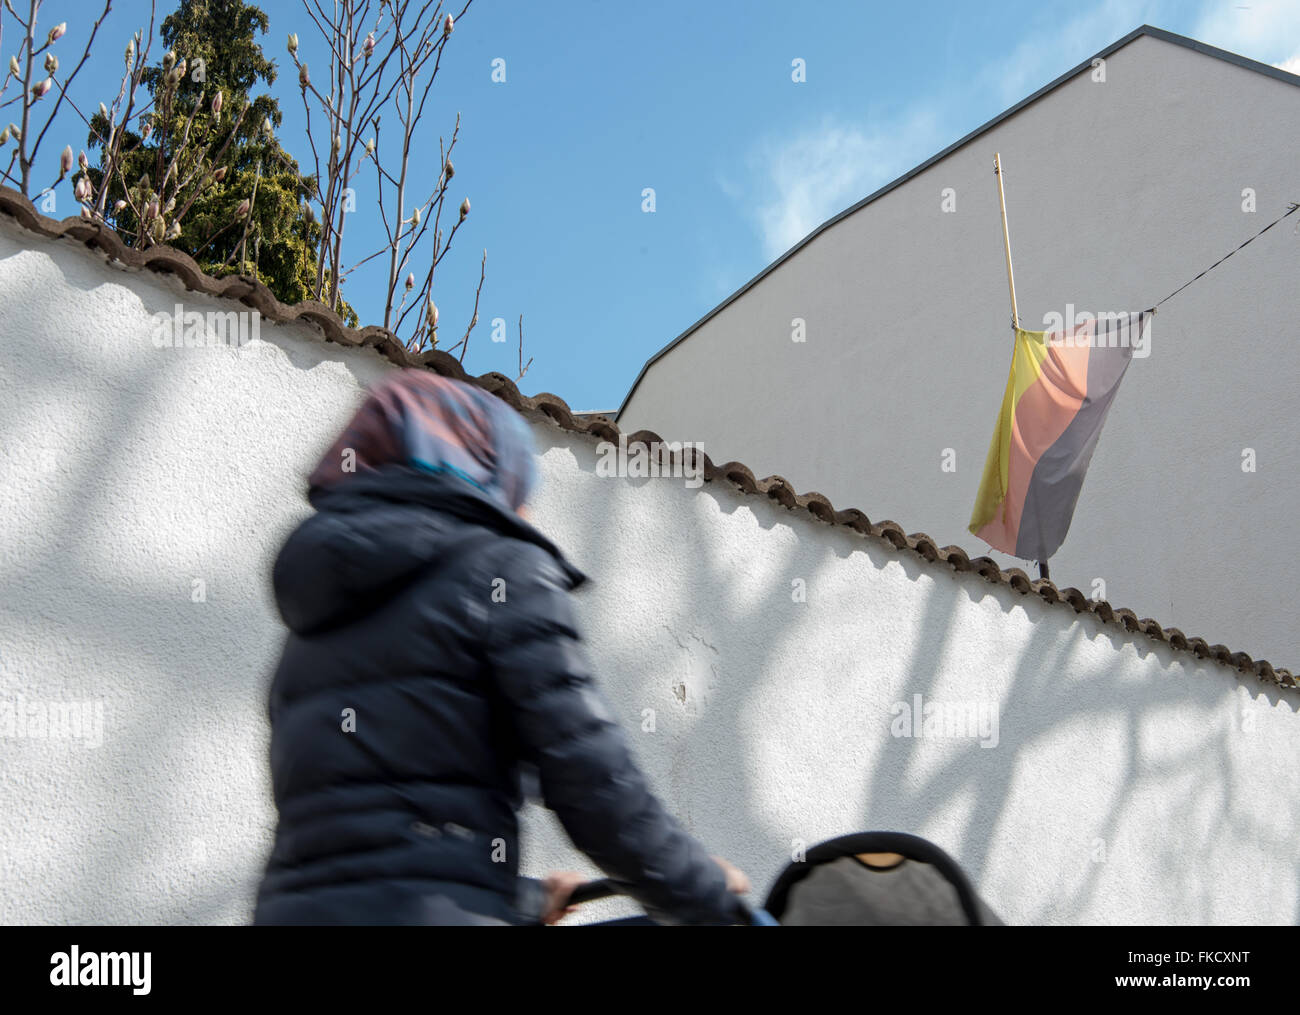 Viernheim, Allemagne. 7 mars, 2016. Une femme avec un foulard drapeau allemand hissé à Viernheim, Allemagne, 7 mars 2016. L'aile droite du parti de l'AfD a reçu 18 pour cent aux élections municipales. PHOTO : ALEXANDER HEINL/dpa/Alamy Live News Banque D'Images